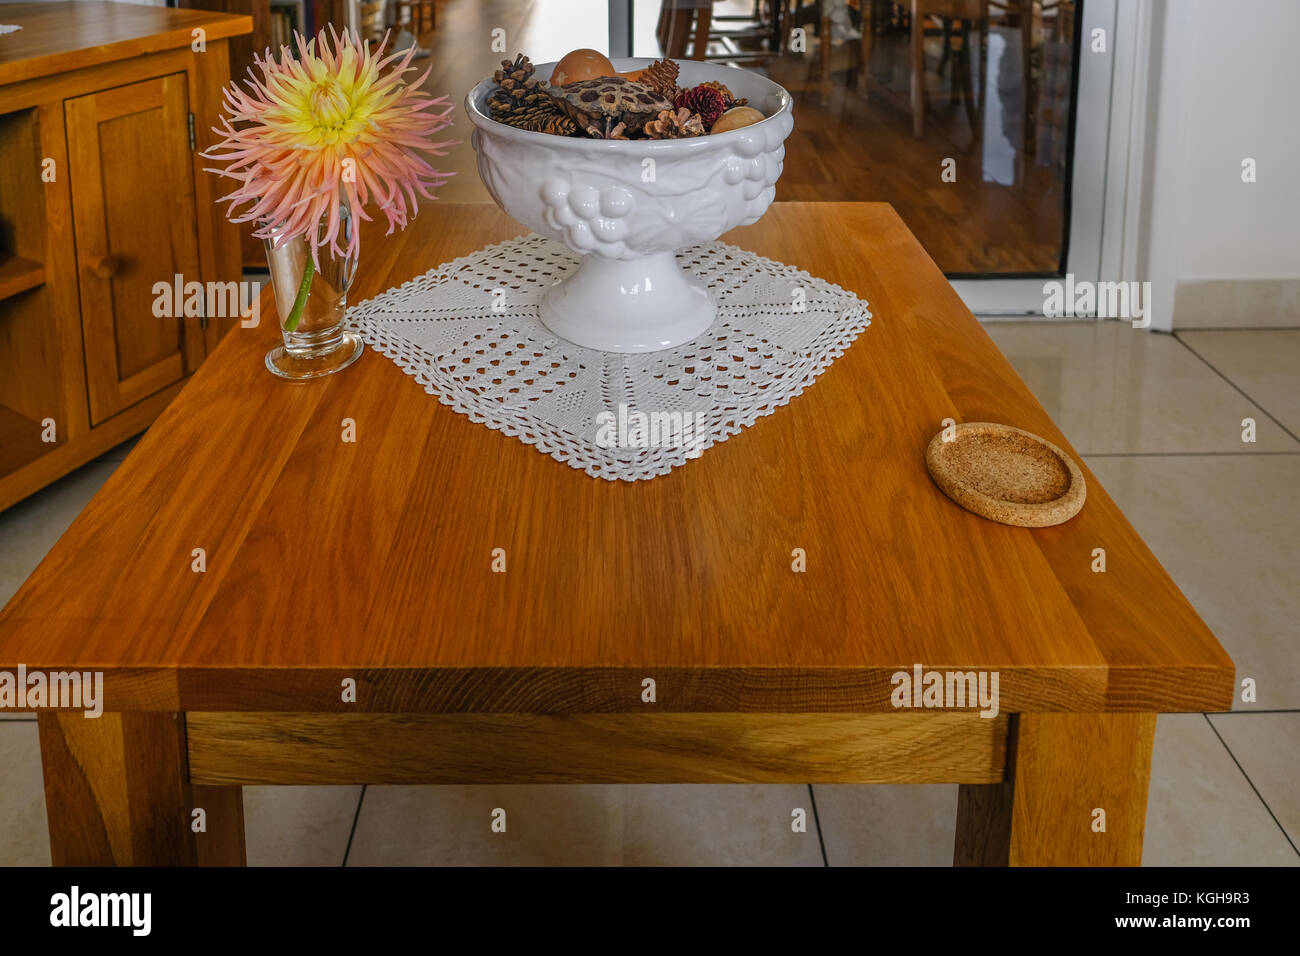 Oak tavolino con coaster, ciotola e dalhia fiore nel vaso. Soggiorno moderno closeup. Foto Stock